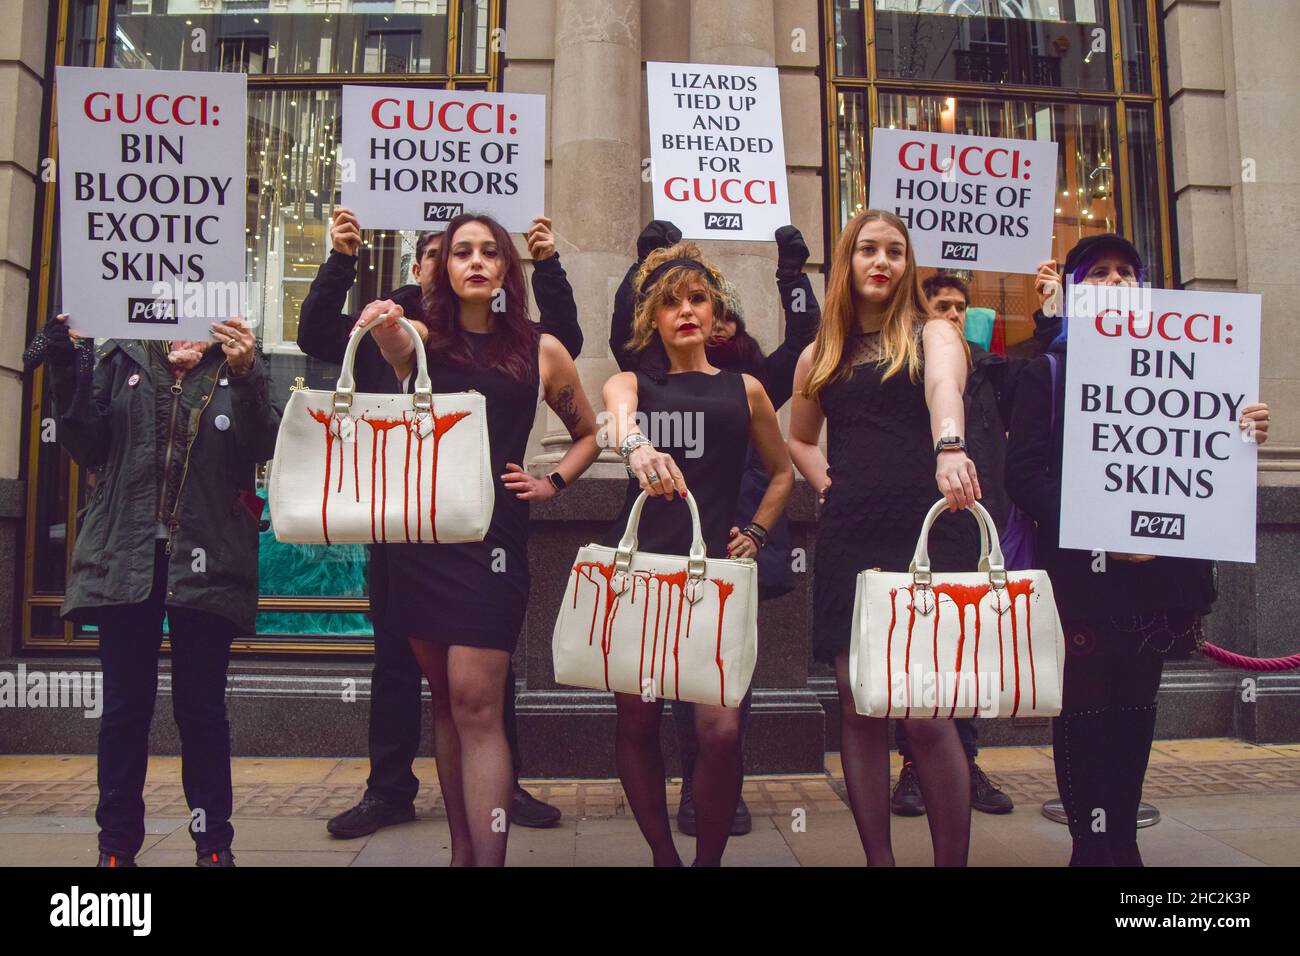 Aktivisten halten Handtaschen, die mit gefälschtem Blut bespritzt sind, und  Plakate, die fordern, dass Gucci während des Protests keine exotischen  Häute mehr verwendet.PETA (Menschen für den ethischen Umgang mit Tieren)  Aktivisten versammelten